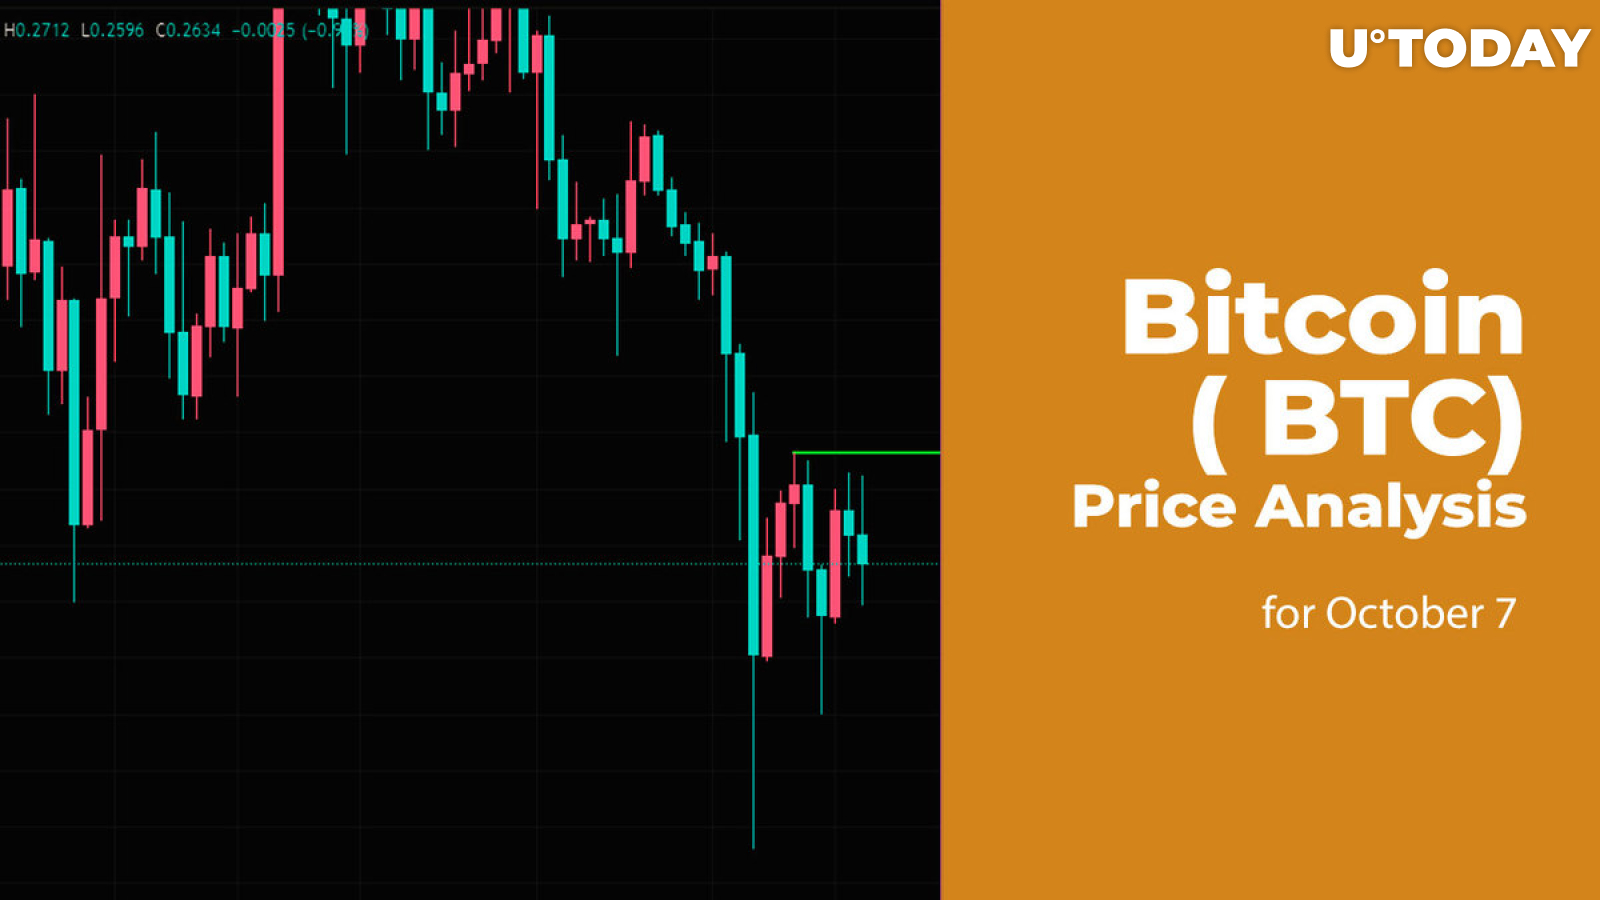 Bitcoin (BTC) Price Analysis for October 7